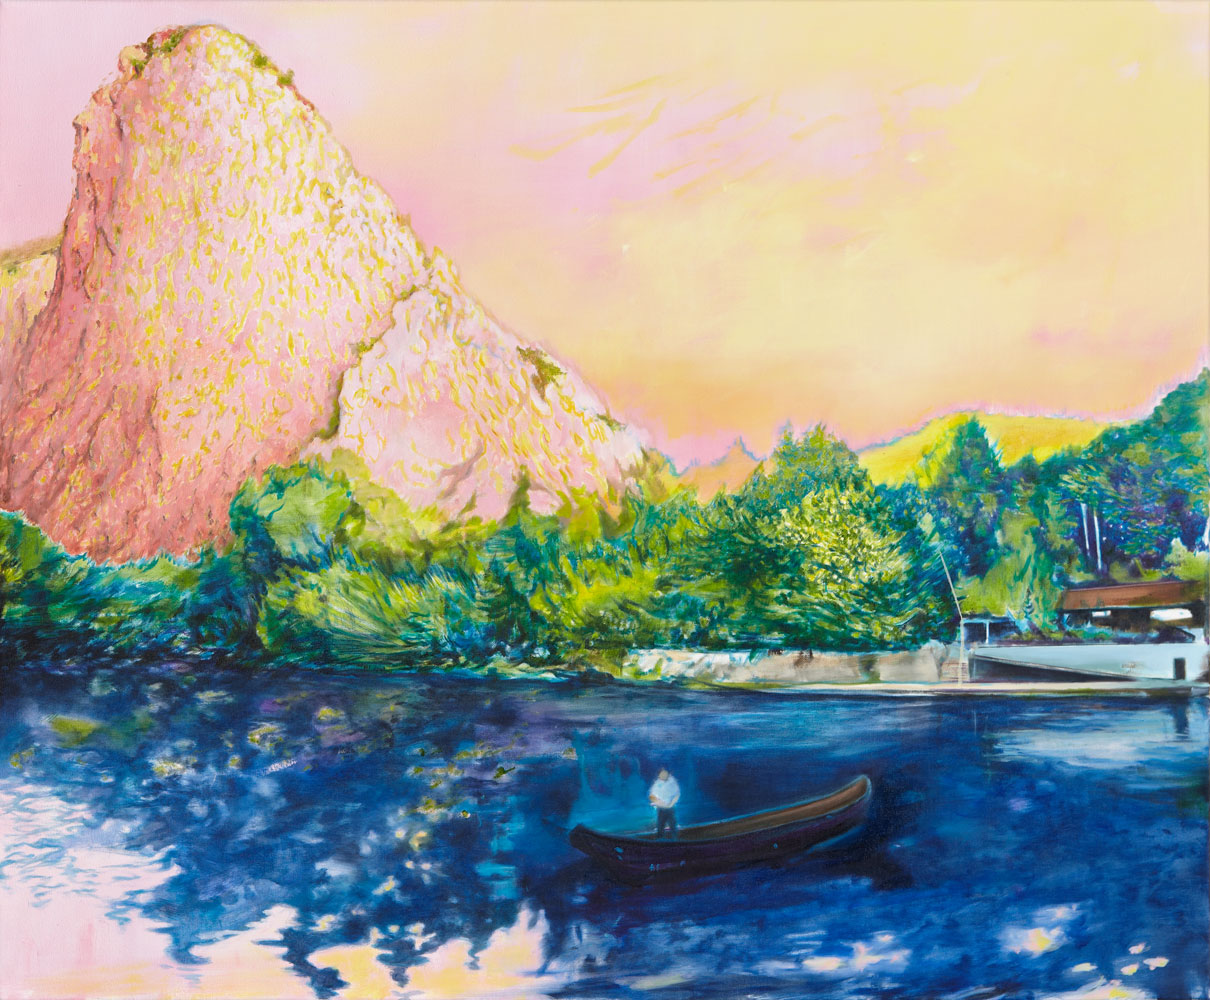 vorne blaues Wasser ein Boot darauf ein Mann treibt aufs Ufer dort ragt ein rosafarbener seltsam geformter Berg auf, der Himmel rosagelb